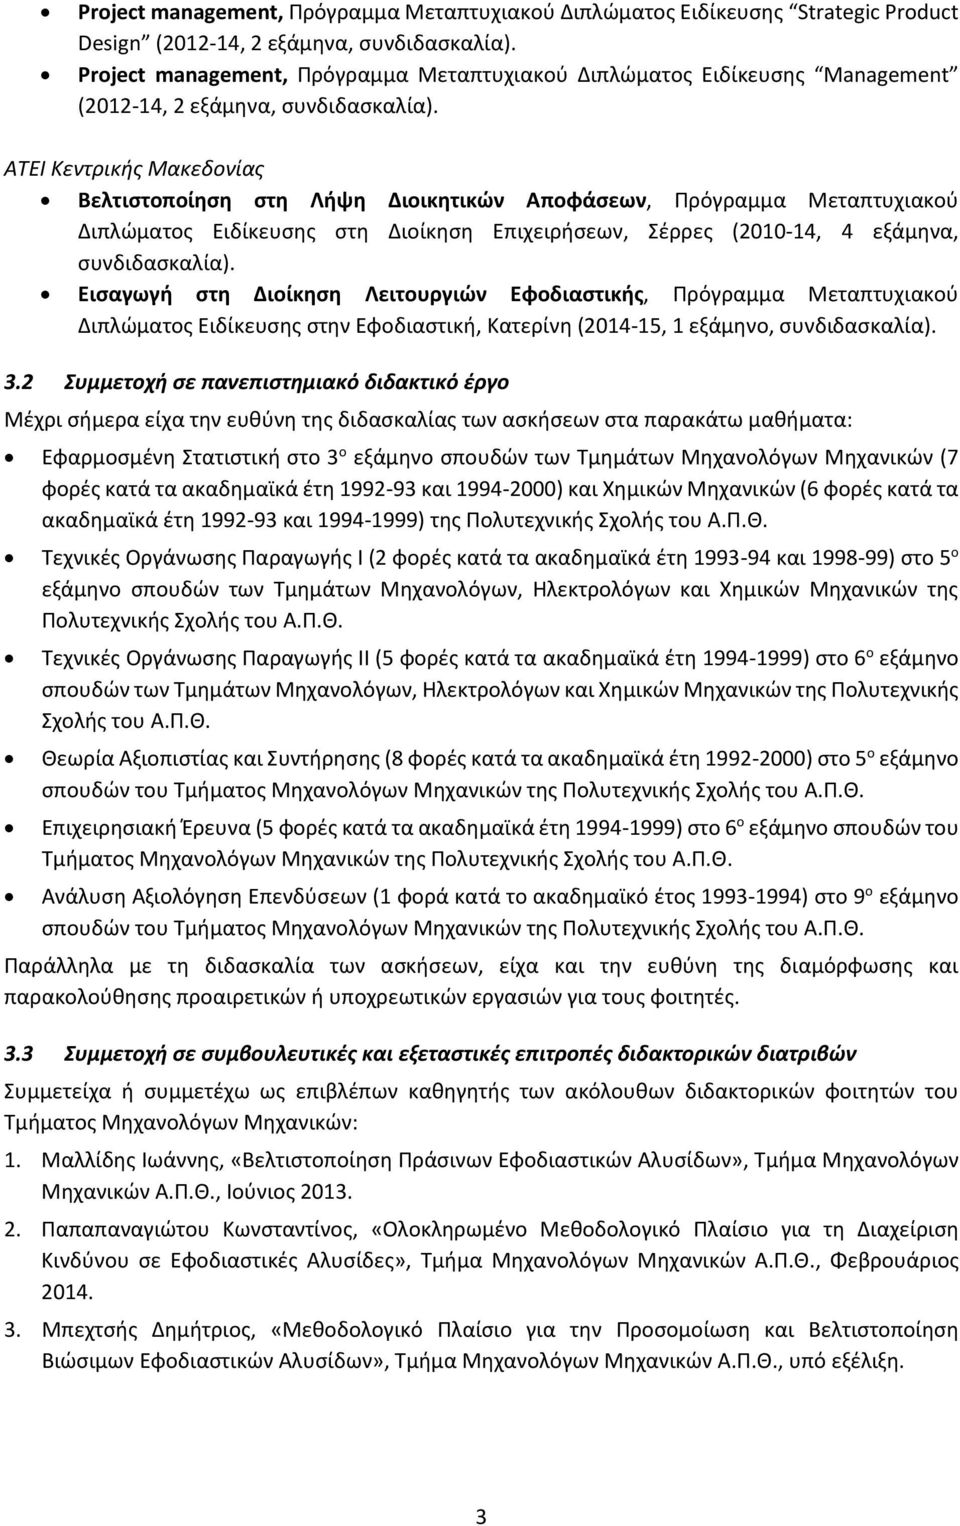 ΑΤΕΙ Κεντρικής Μακεδονίας Βελτιστοποίηση στη Λήψη Διοικητικών Αποφάσεων, Πρόγραμμα Μεταπτυχιακού Διπλώματος Ειδίκευσης στη Διοίκηση Επιχειρήσεων, Σέρρες (2010-14, 4 εξάμηνα, συνδιδασκαλία).